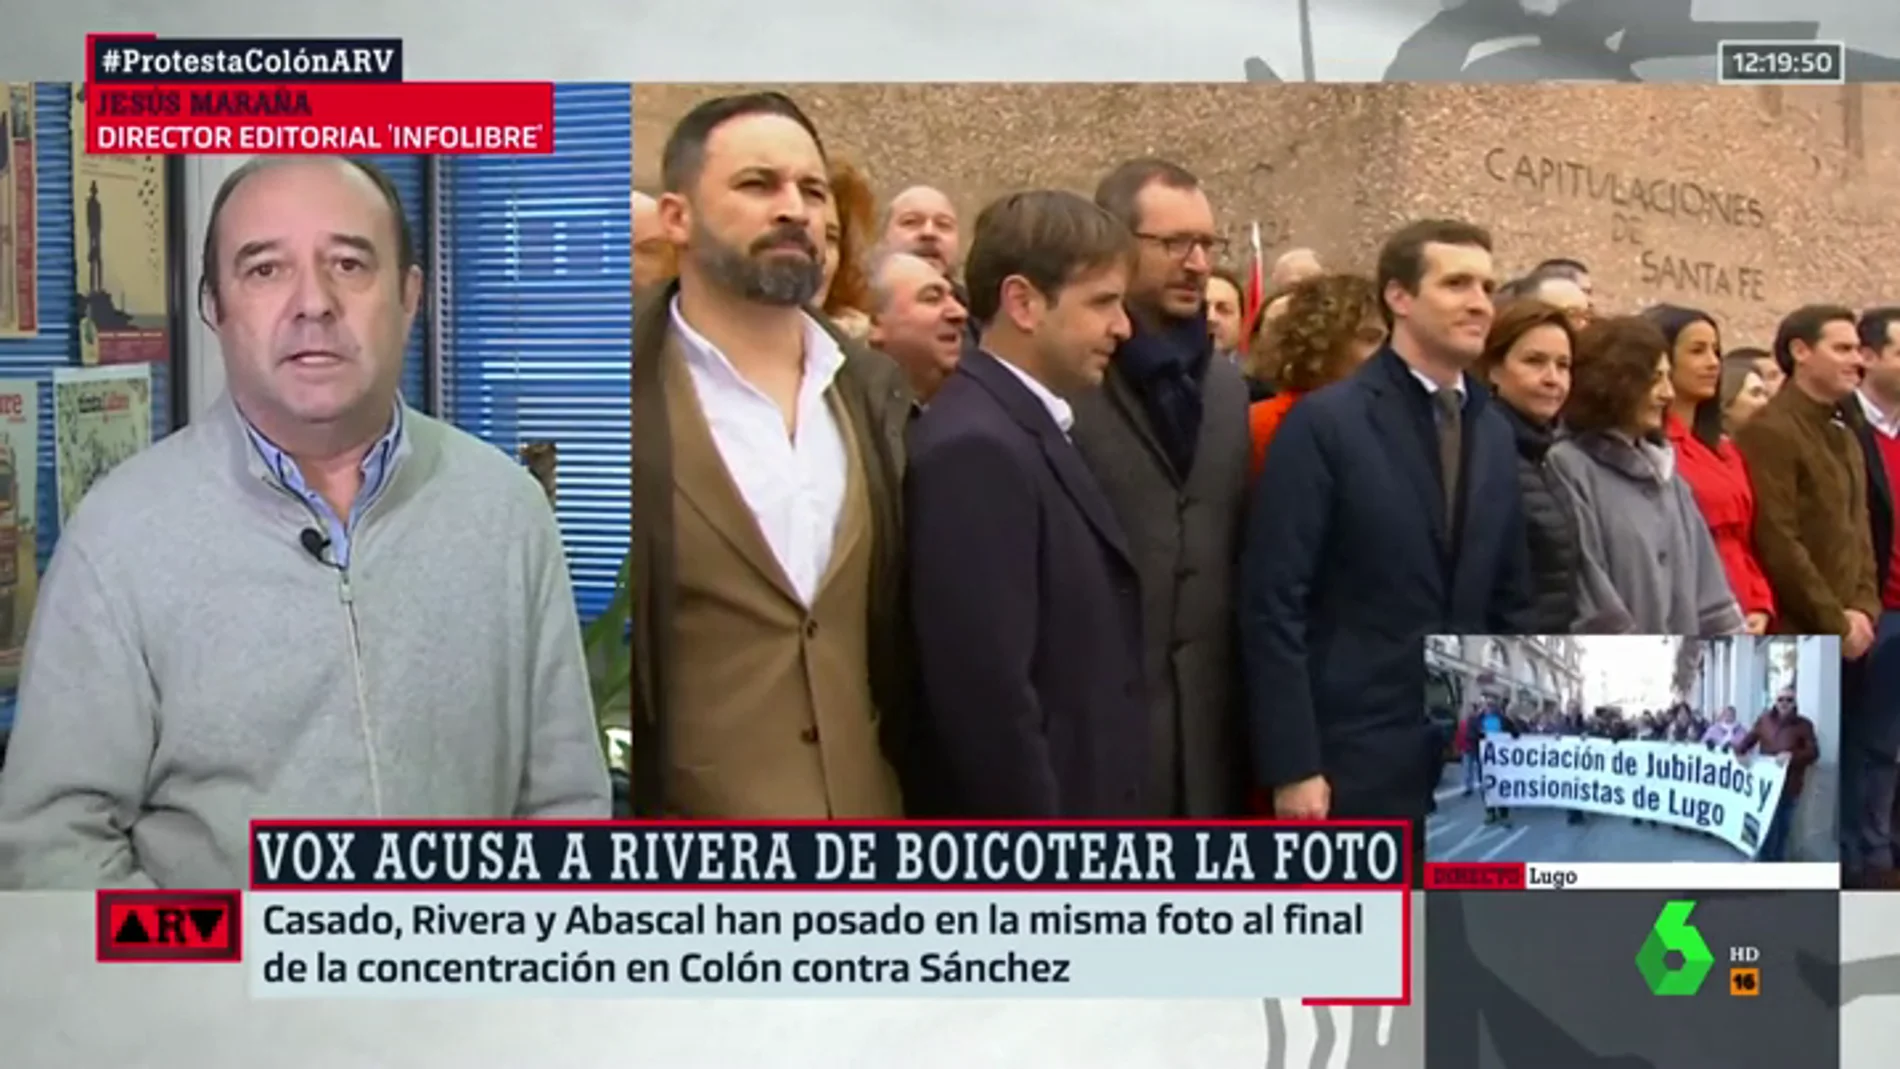 Jesús Maraña analiza la foto de Albert Rivera con Vox: "Intentan negar lo evidente, como en Andalucía, pero es una realidad que está ahí"